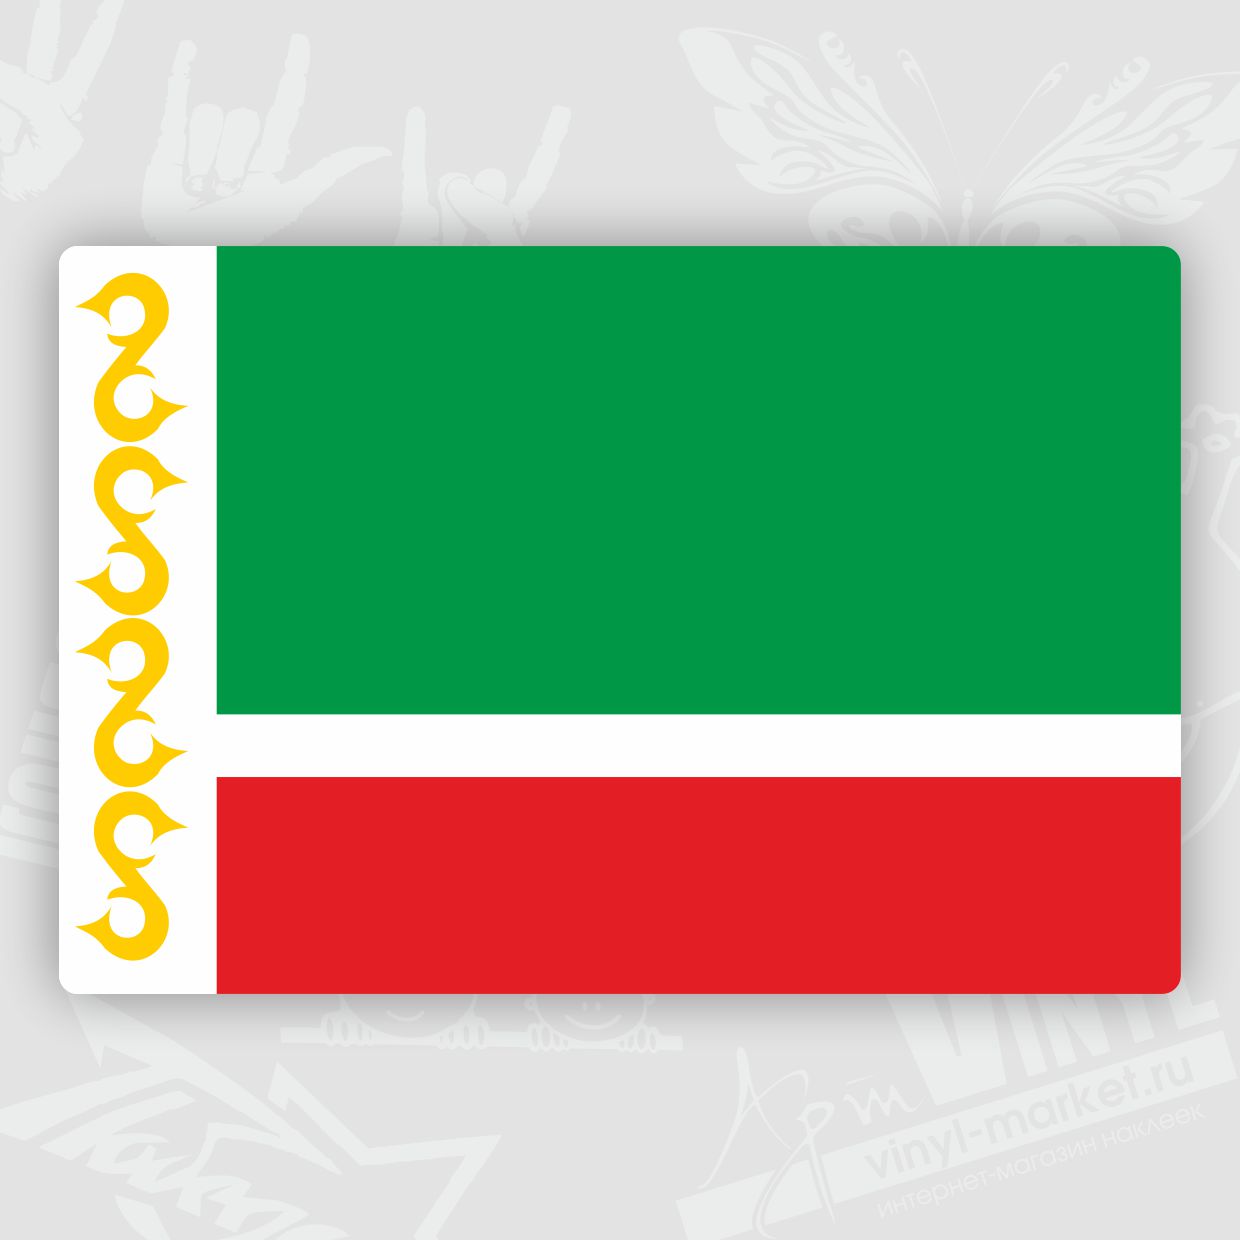 Флаг Чеченской Республики Фото